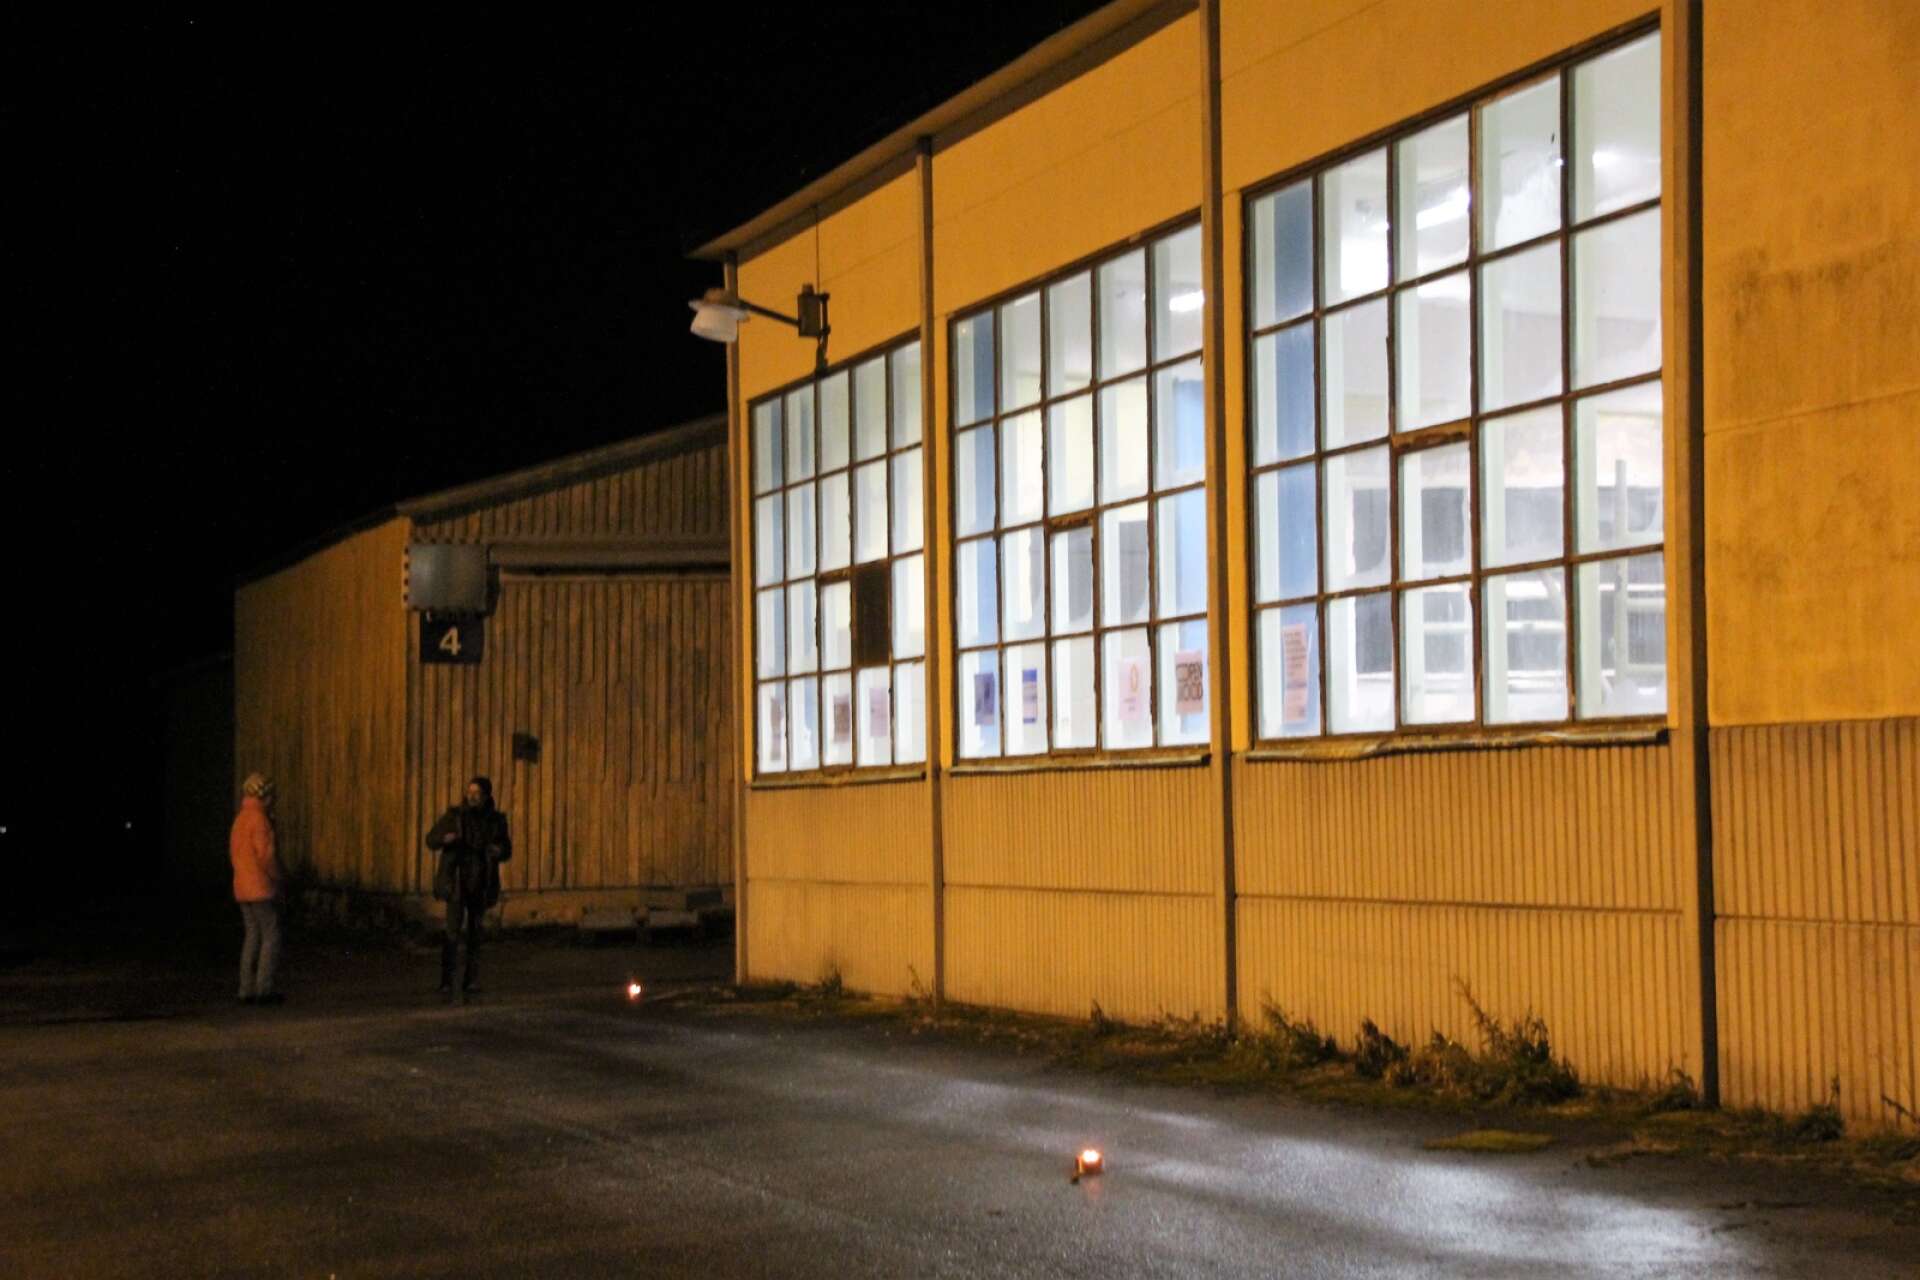 Delar av Rexcells fabrikslokaler i Dals Långed lyser igen. Förra veckan fick allmänheten kika på vad som händer i lokalerna där projektet Open Wood etablerats.